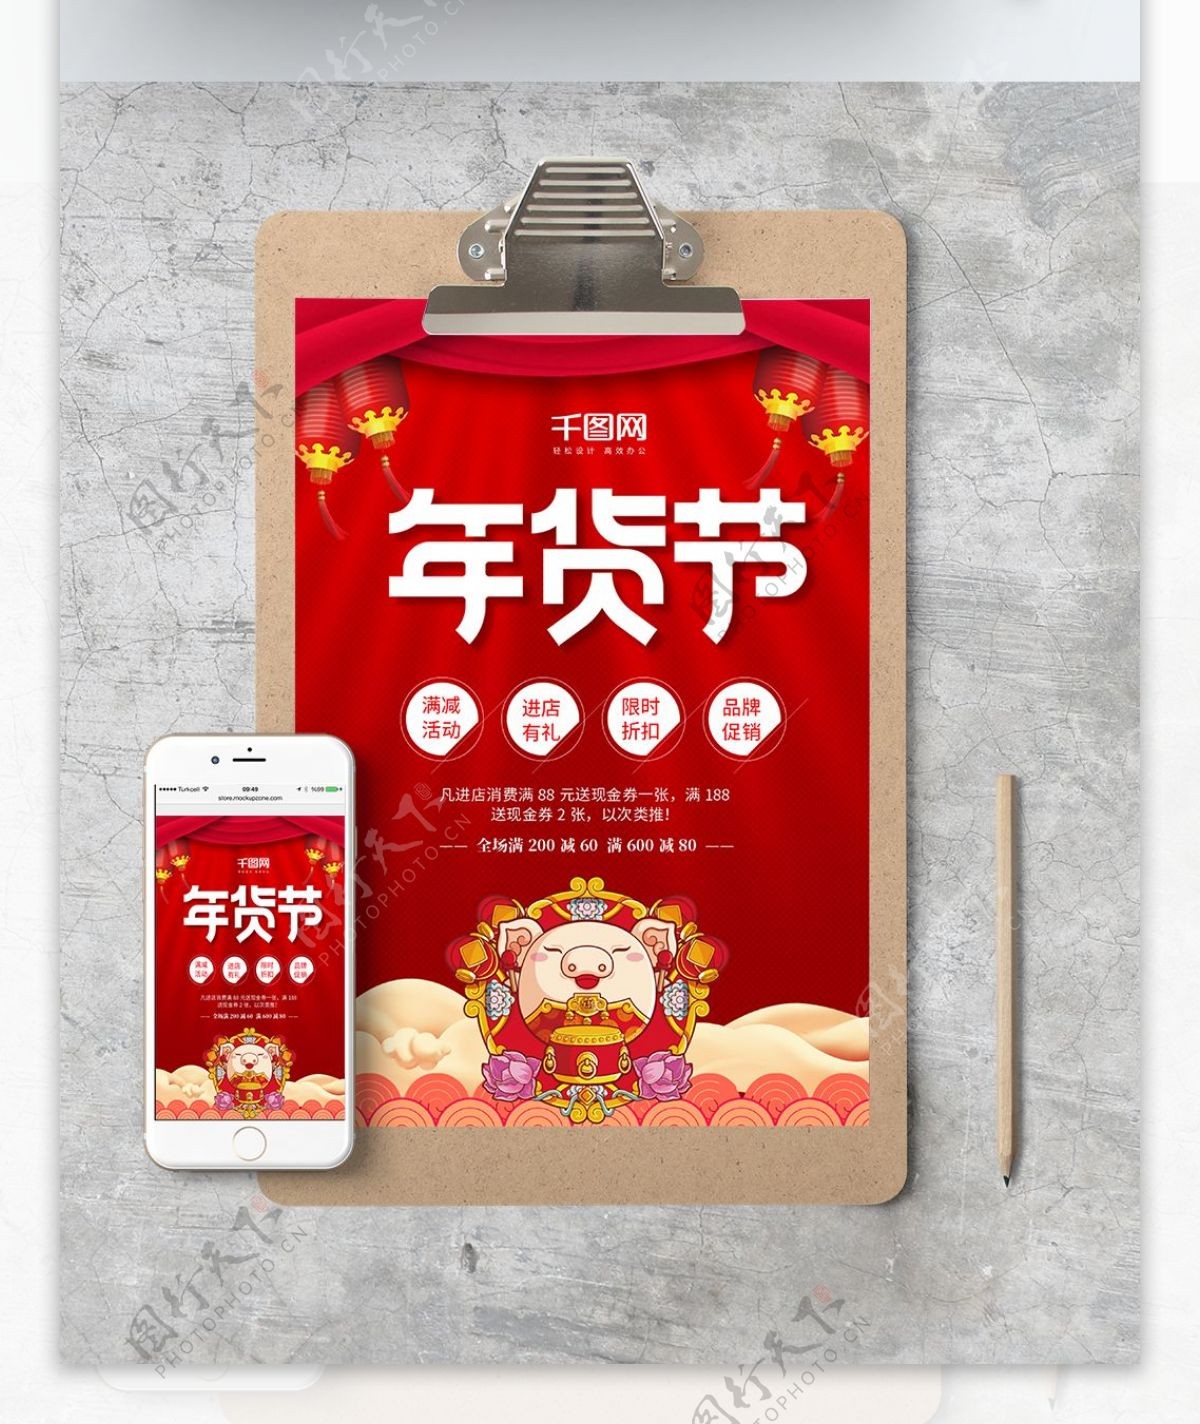 红色喜庆小猪年货节促销WORD海报